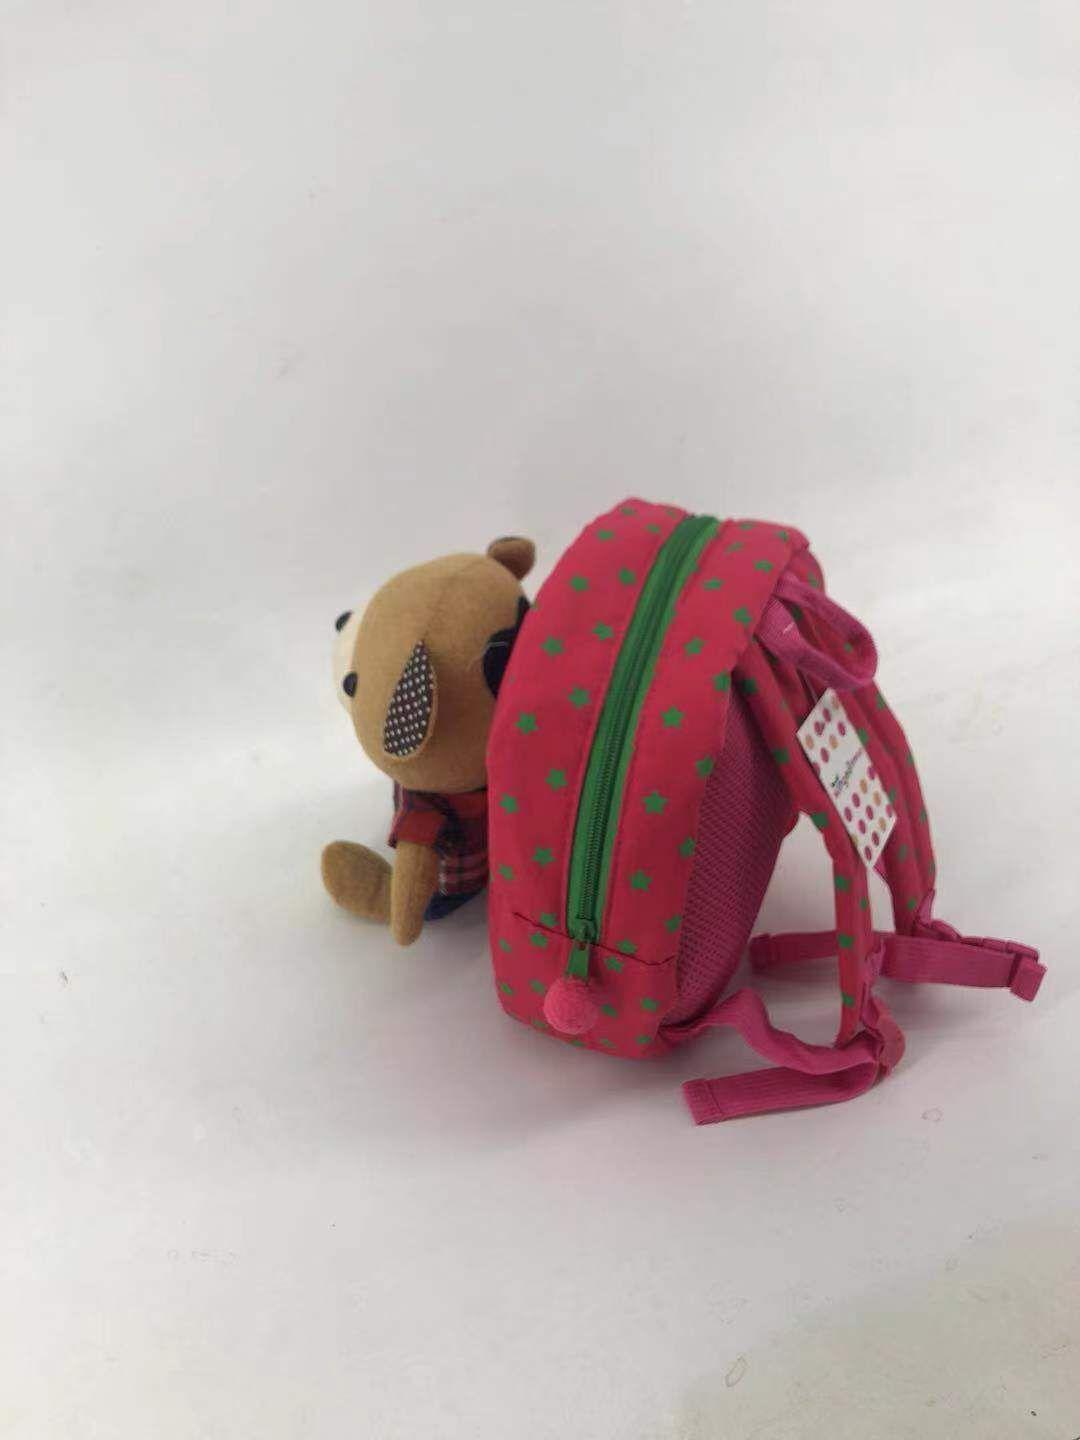 Plecak dla dziecka ze smyczą zabezpieczającą MIŚ – różowy